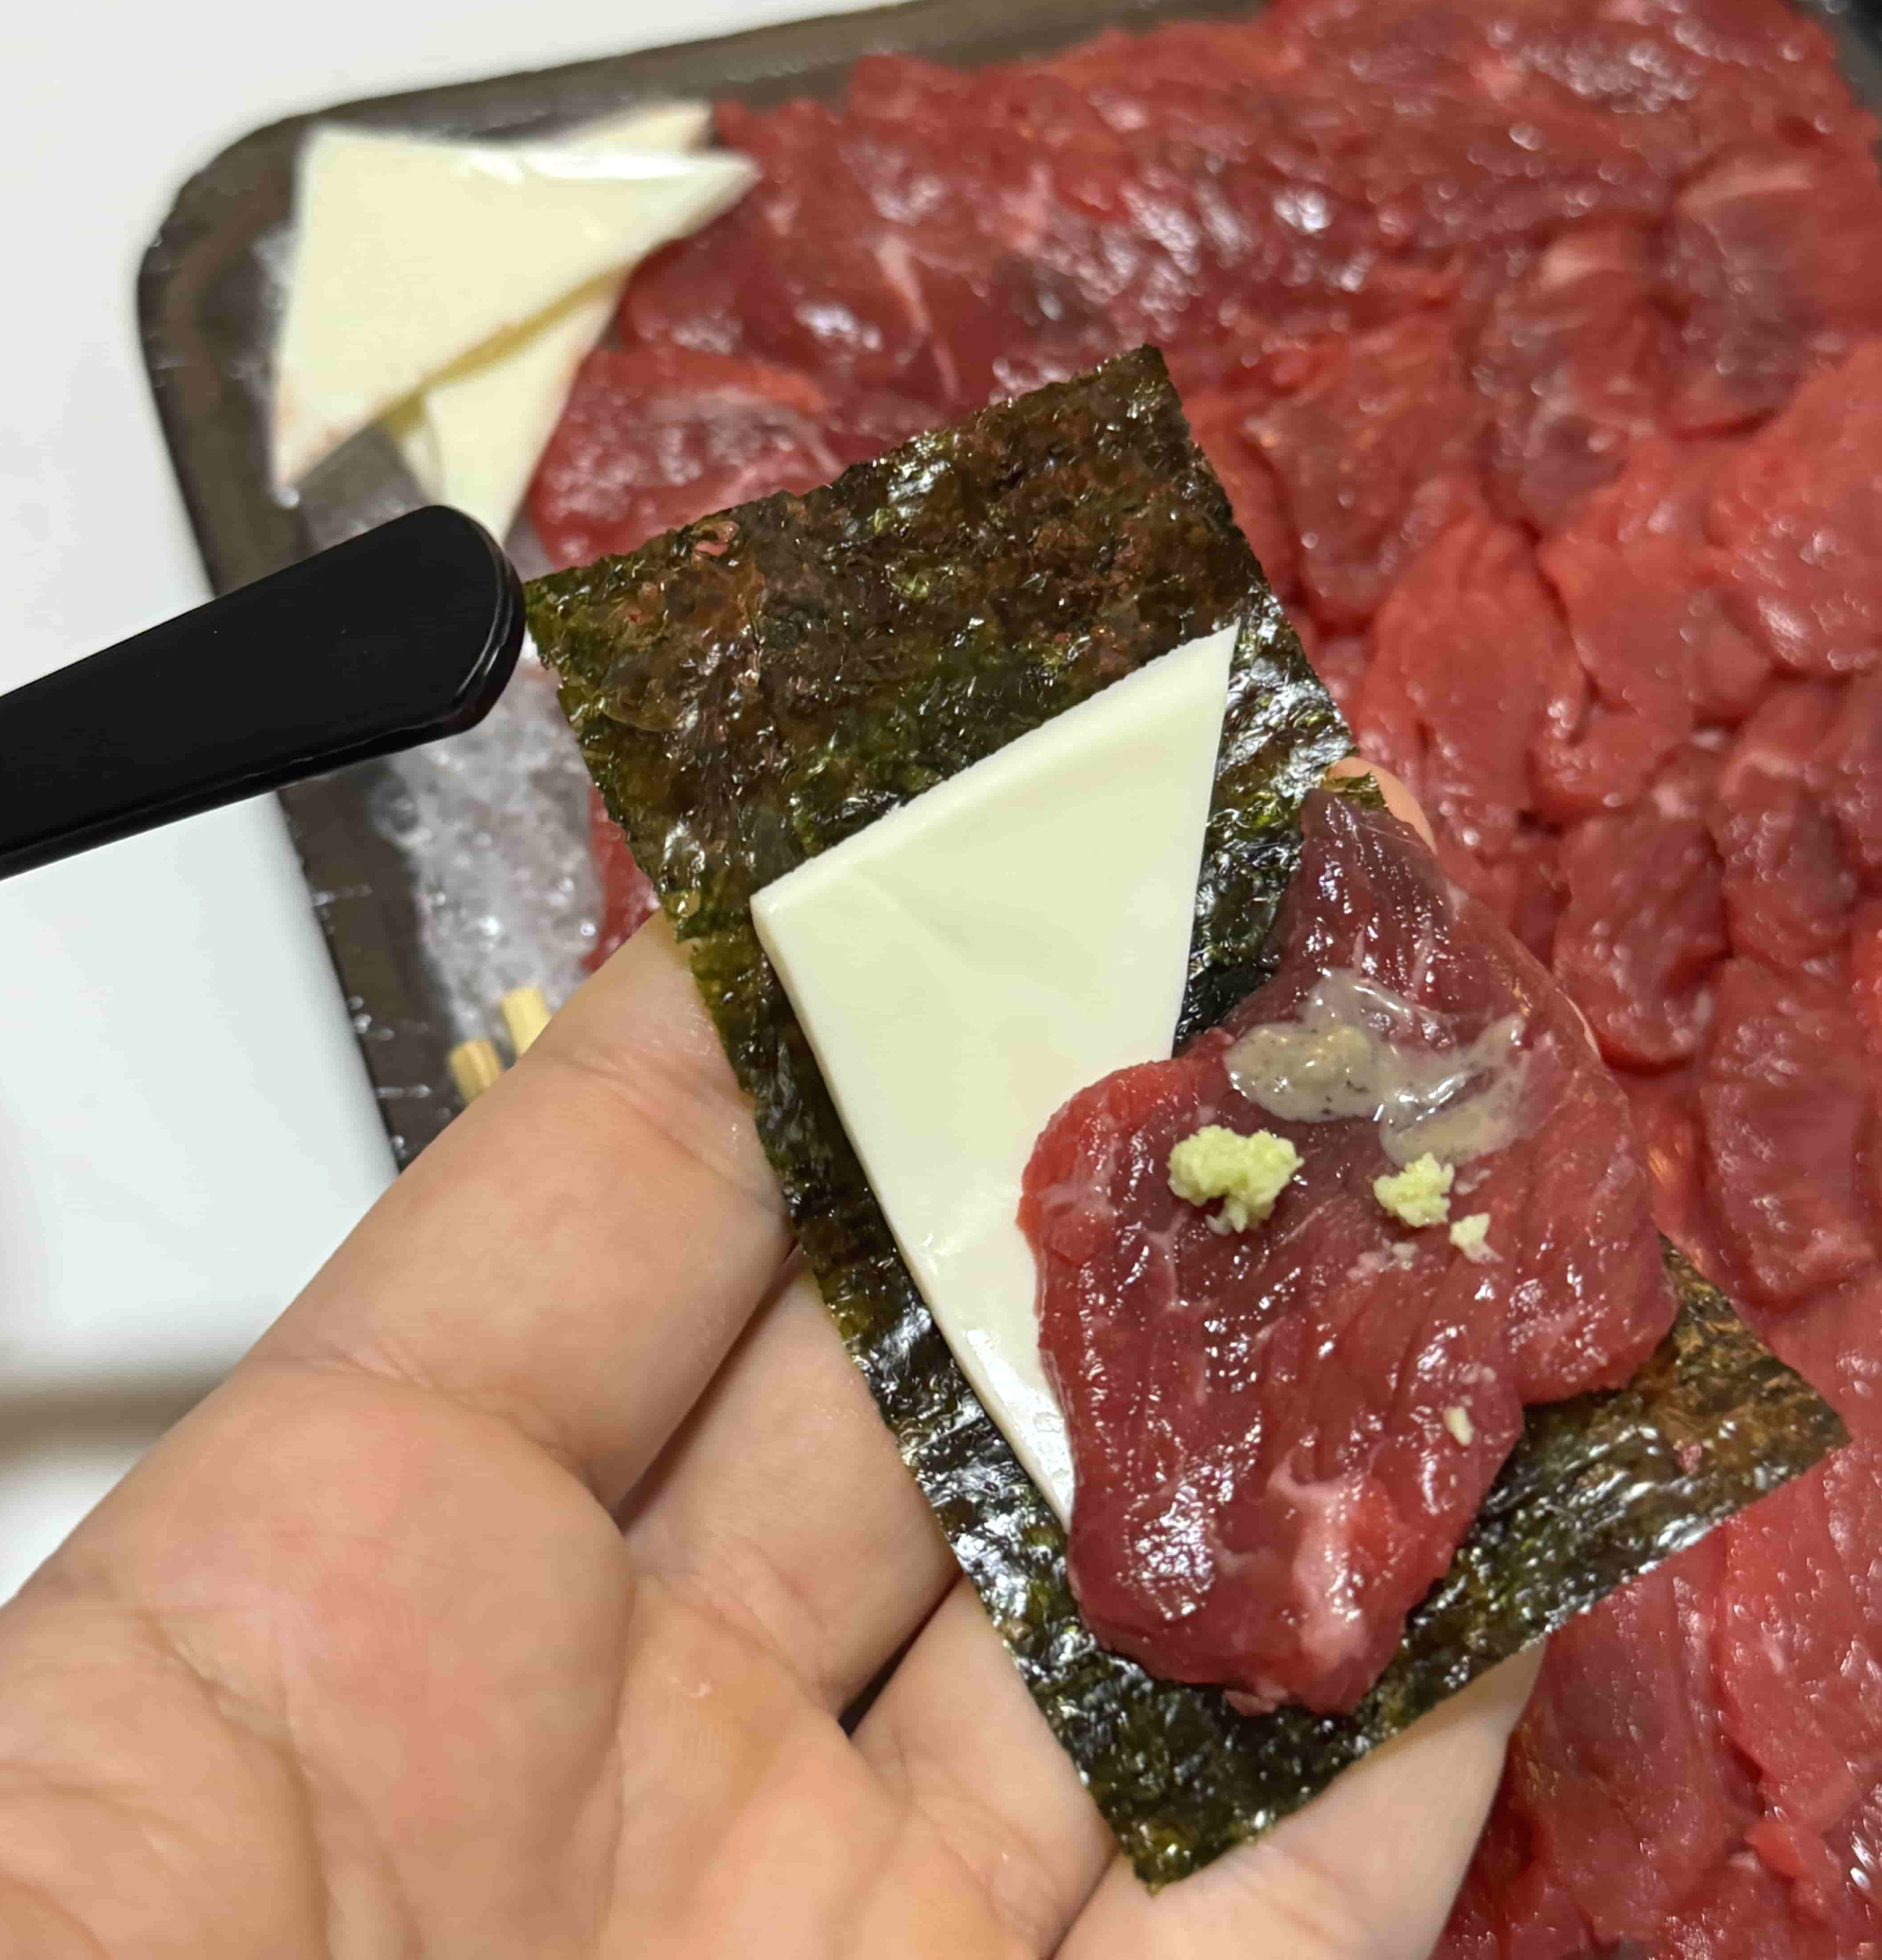 김 위에 육사시미와 치즈를 올려서 먹는 사진